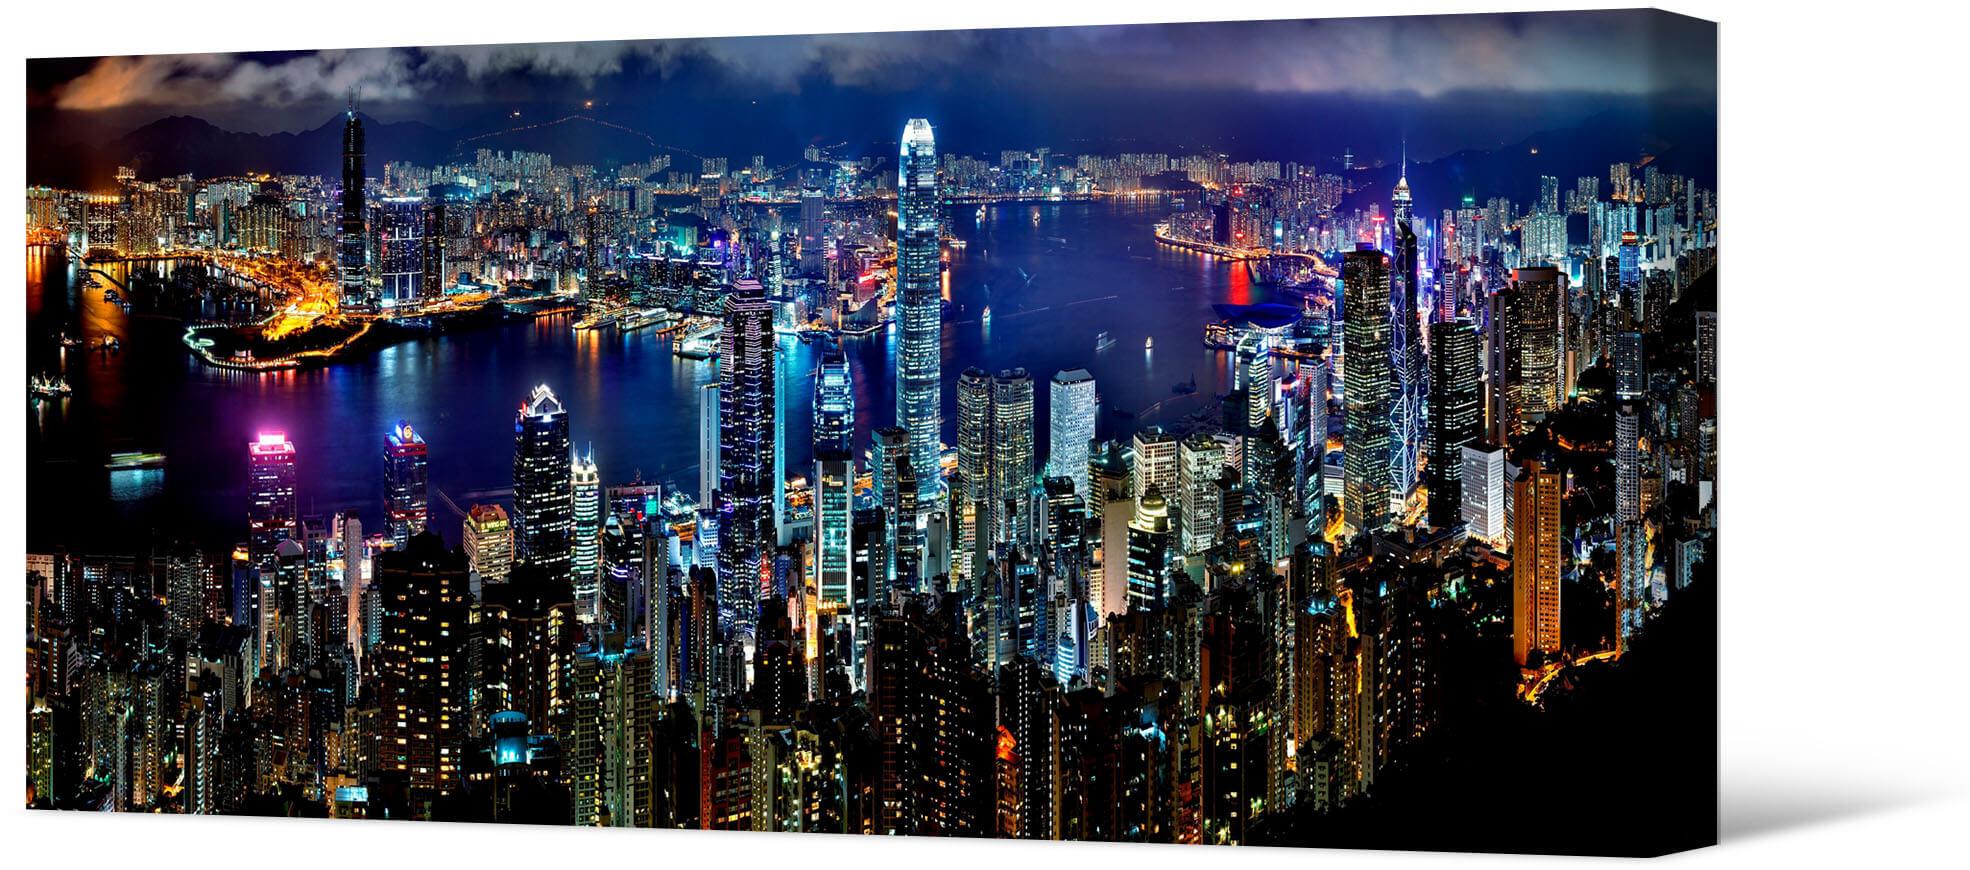 The Splendor of Hong Kong at Night